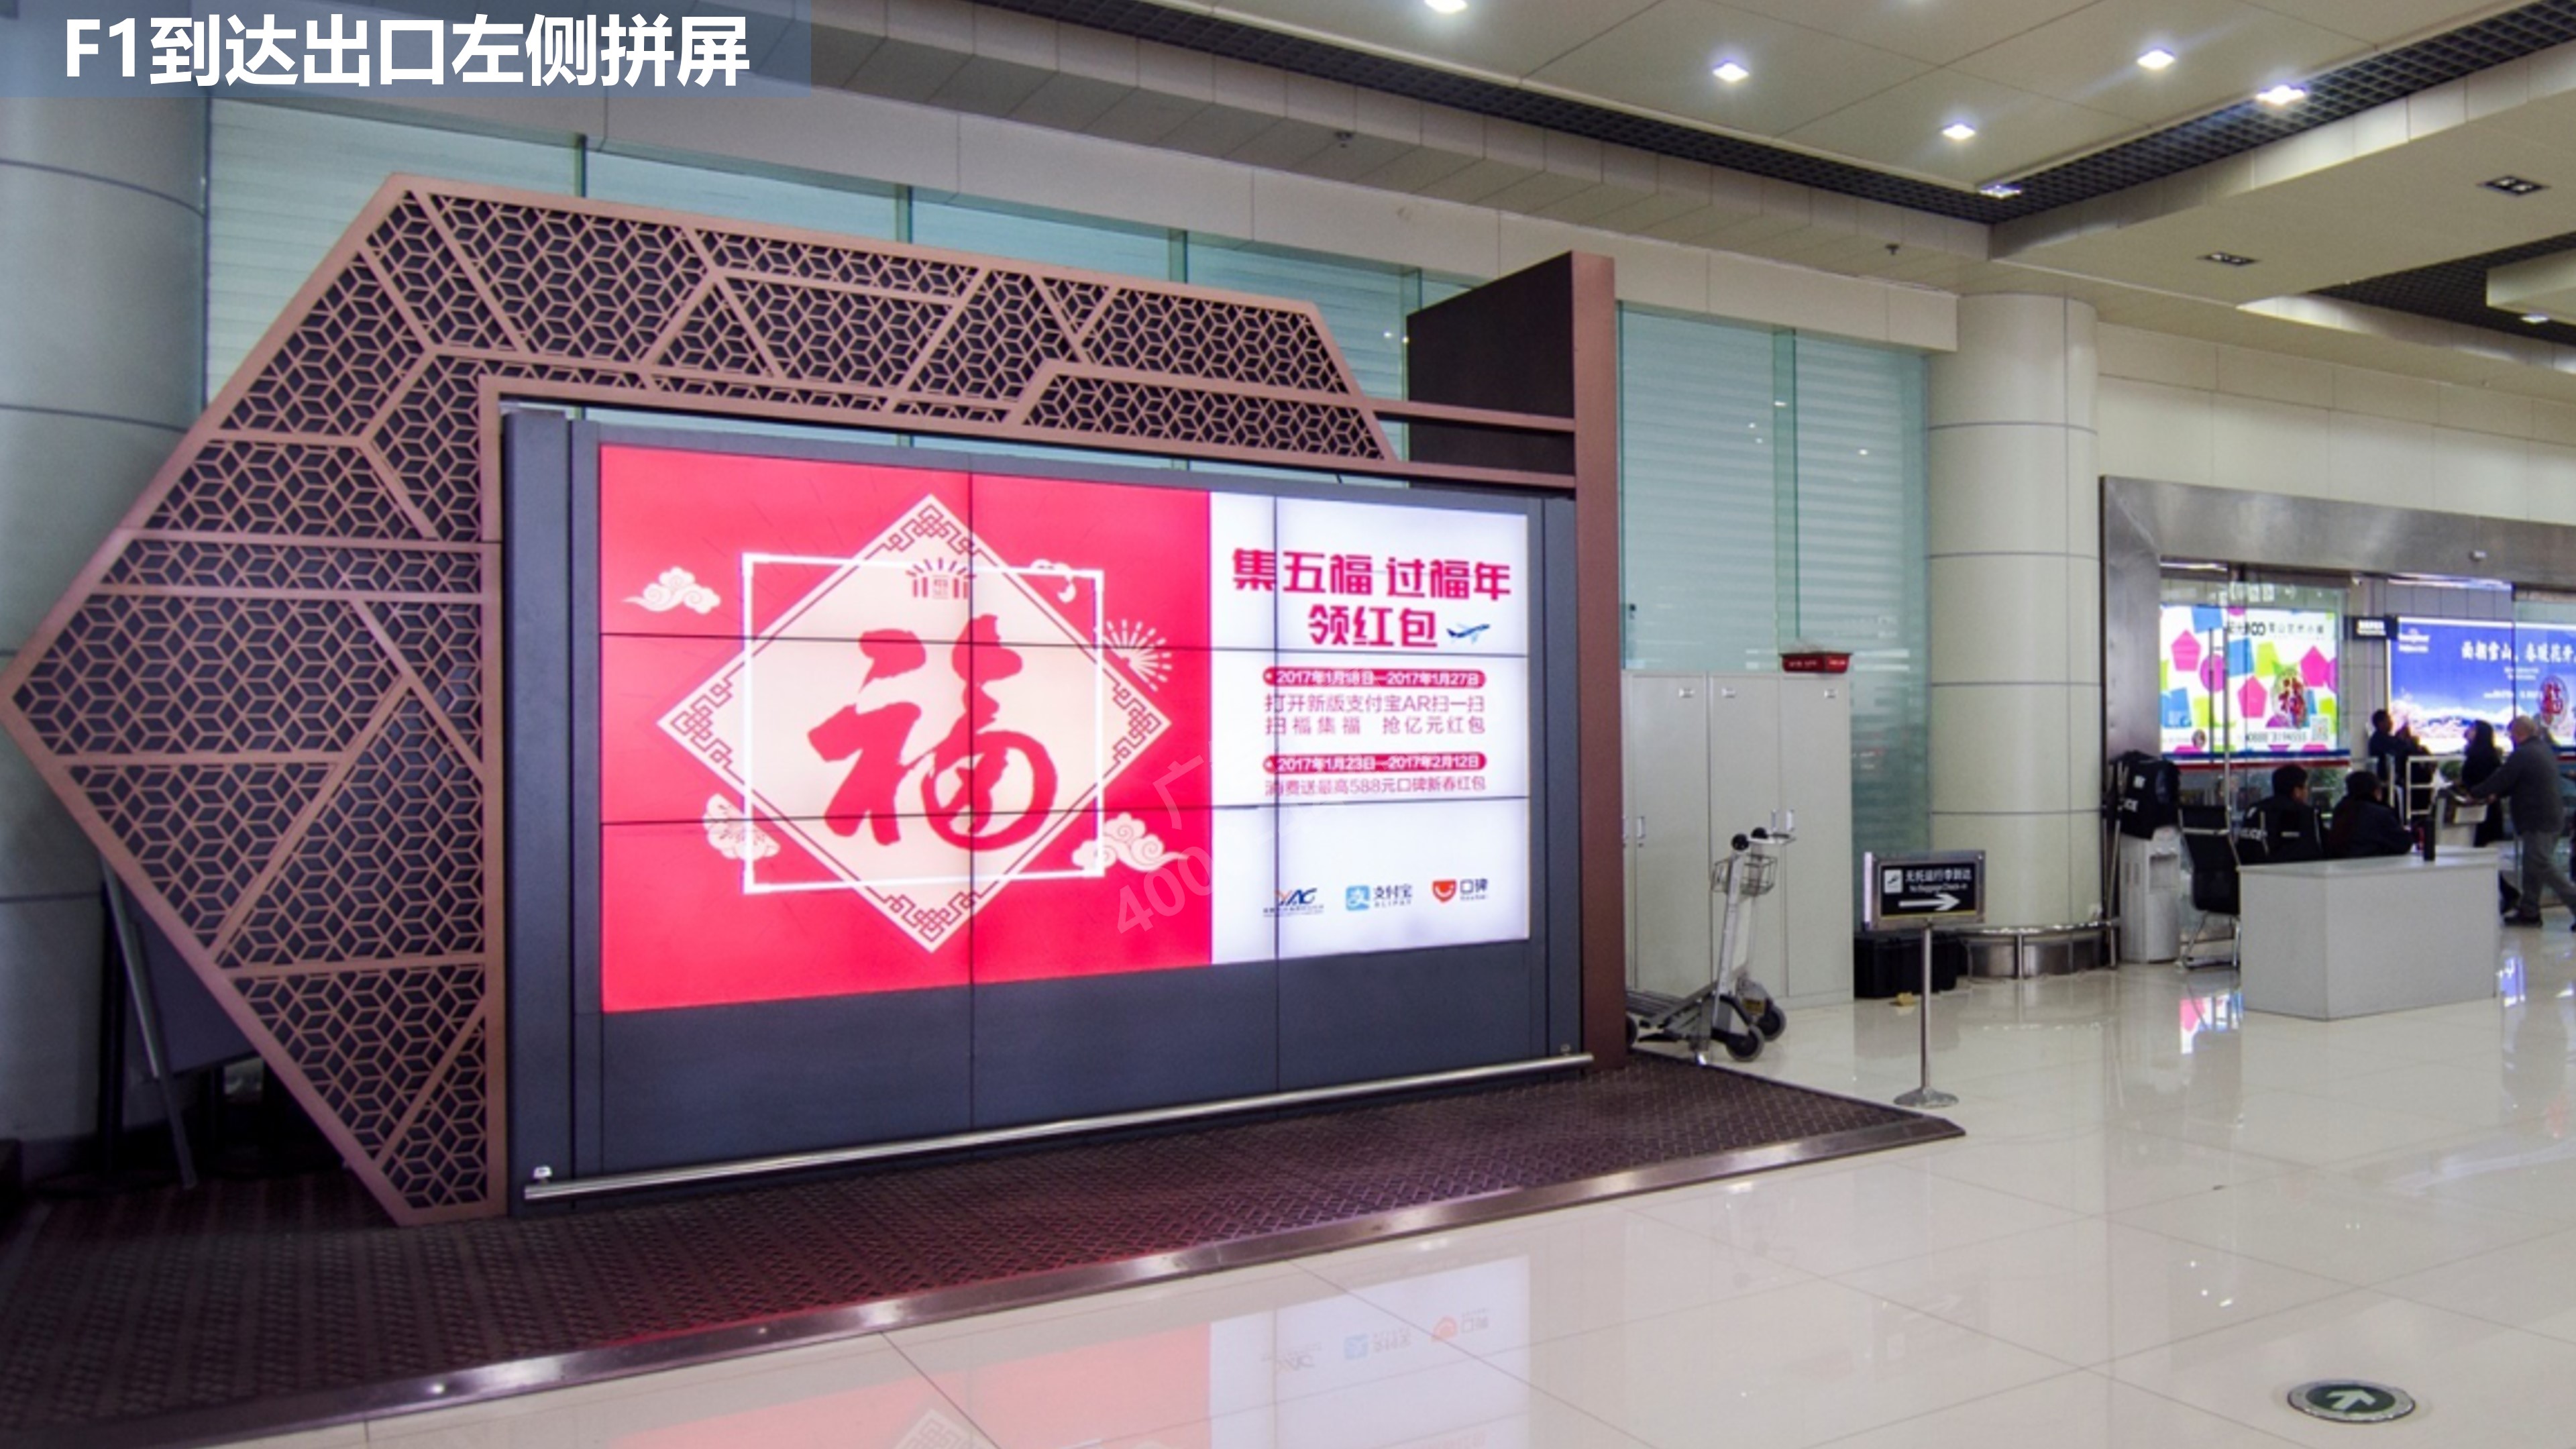 丽江机场到达出口广告